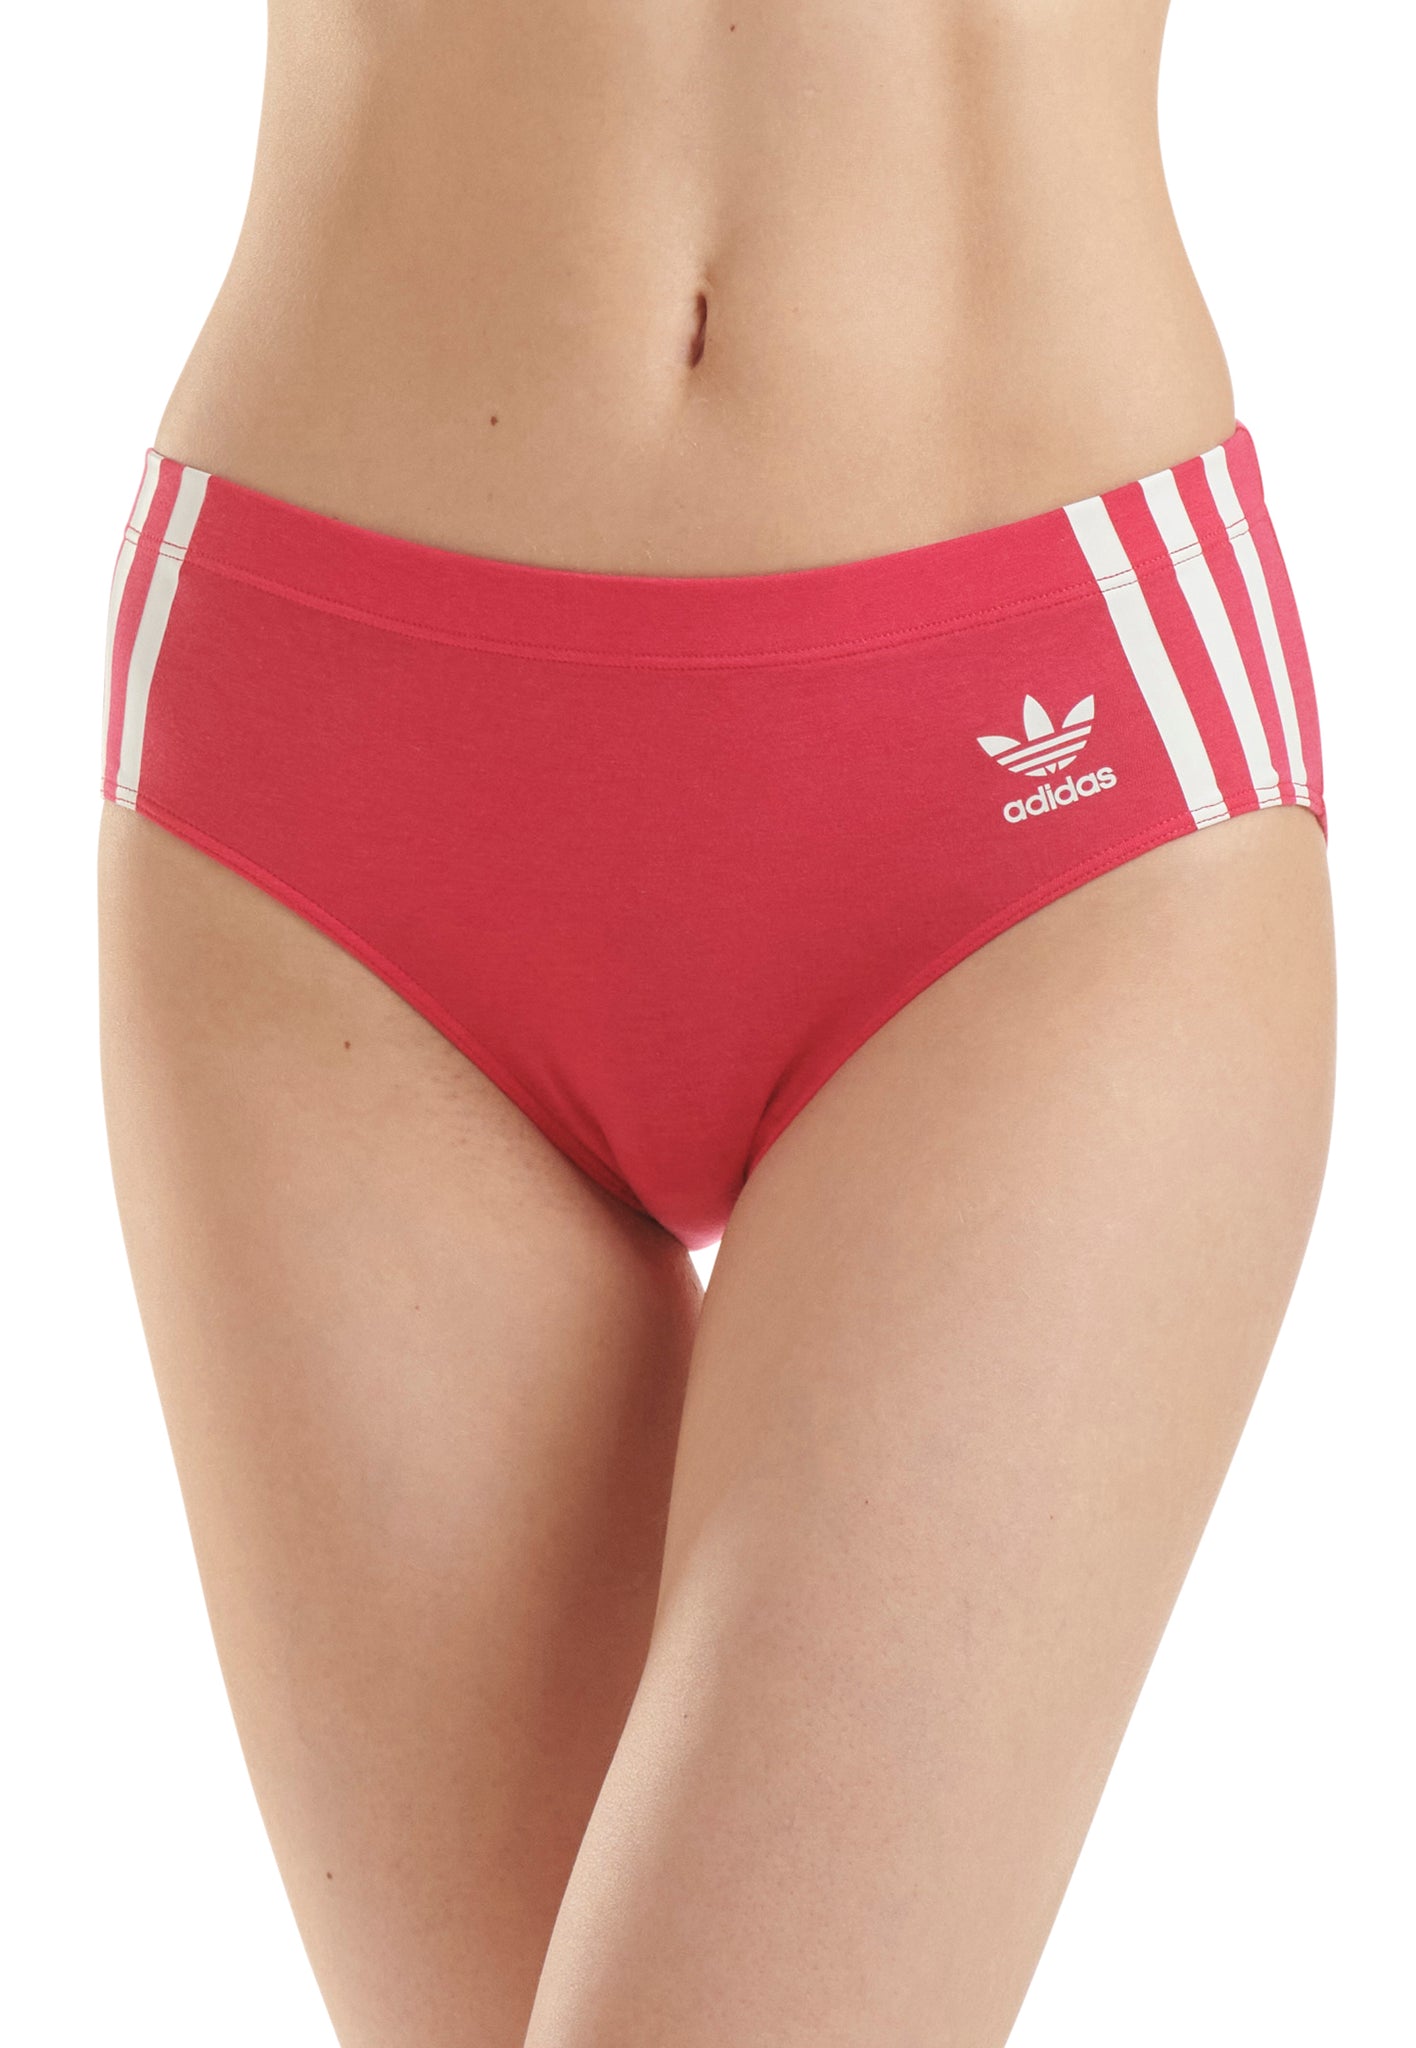 Adidas Sports Underwea Women Crop Bra Bust Holder, plain red